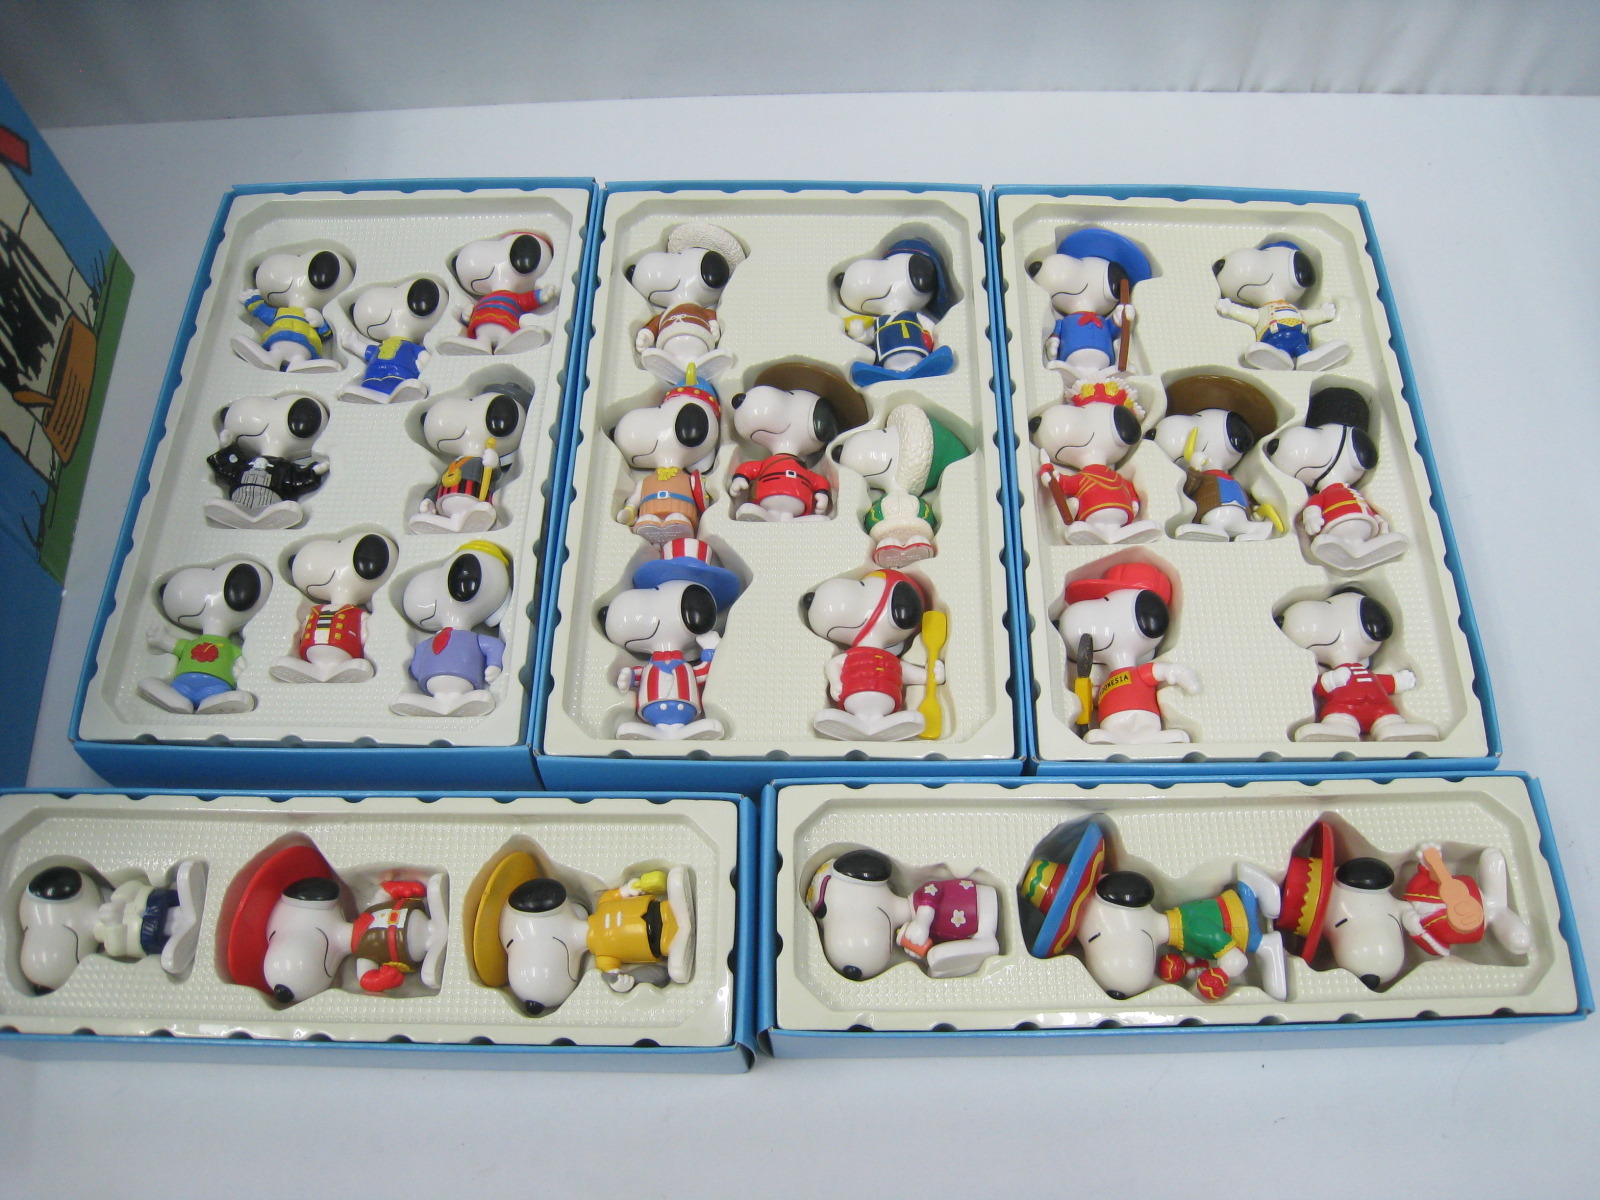 楽天市場 新品 1998年 マクドナルド スヌーピー ワールドツアー フィギュア 28種 約10センチ コレクションボックス セット Snoopy World Tour セブンヘブンストア